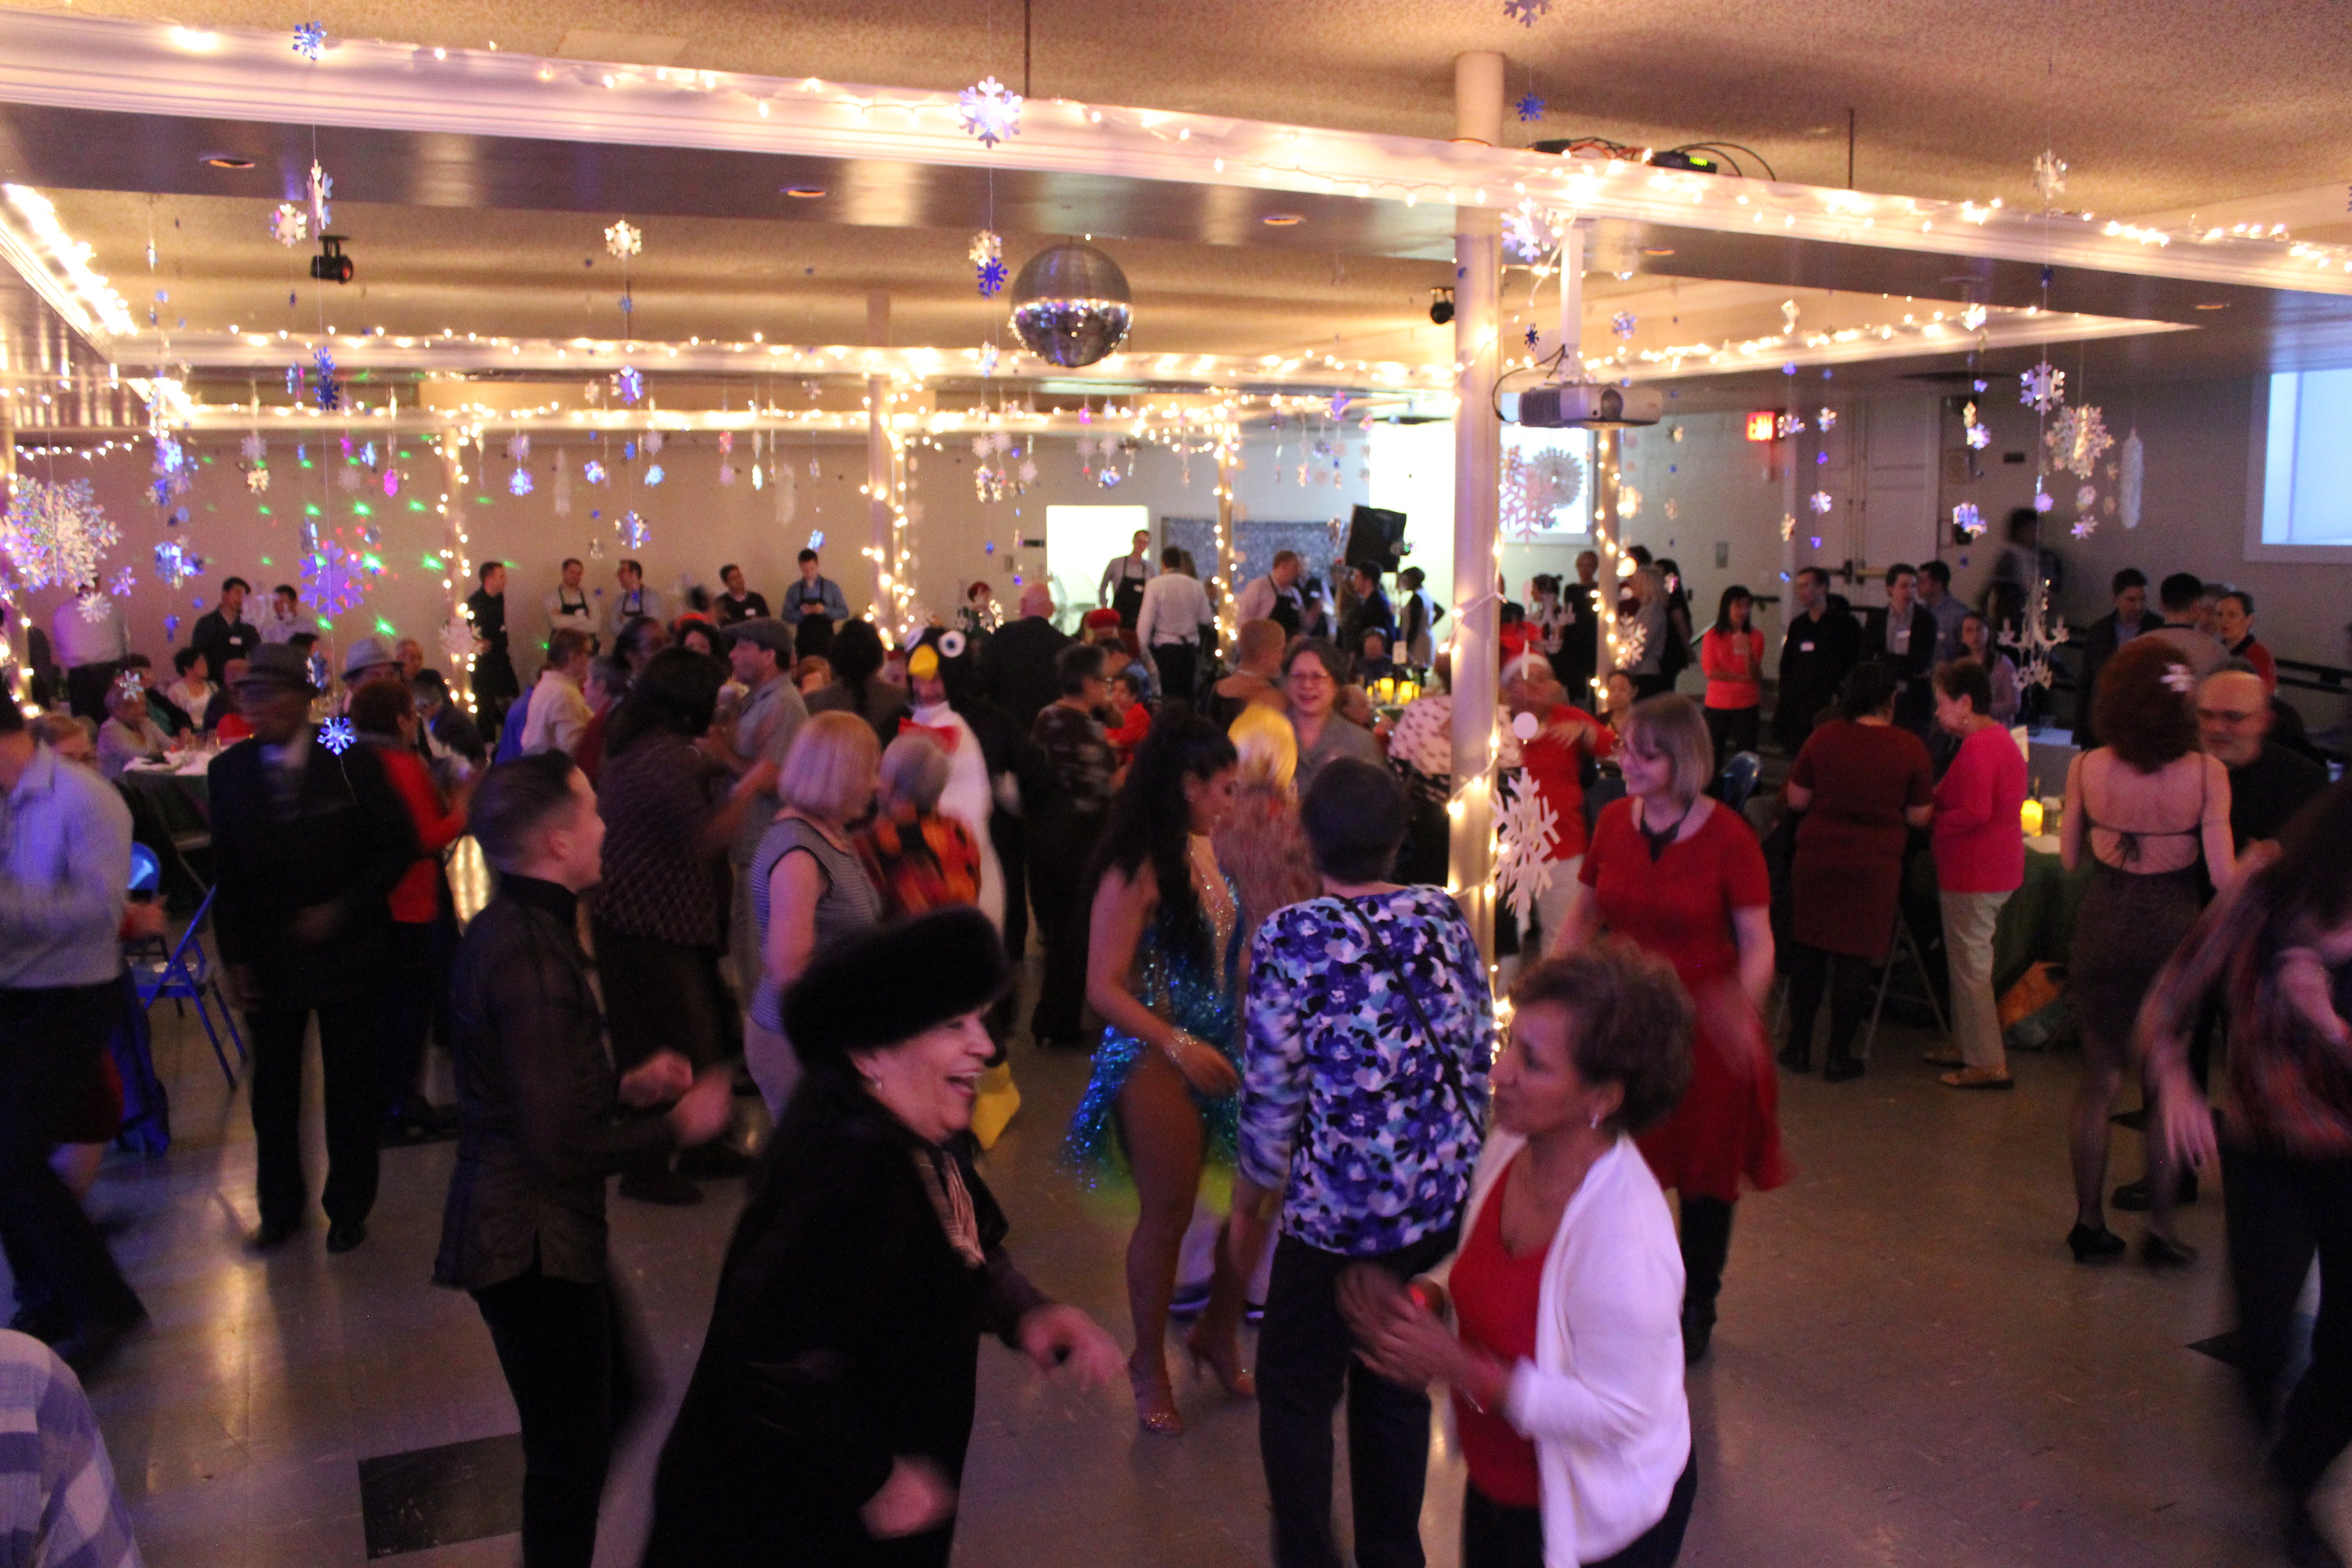 Seniors dancing at a holiday party